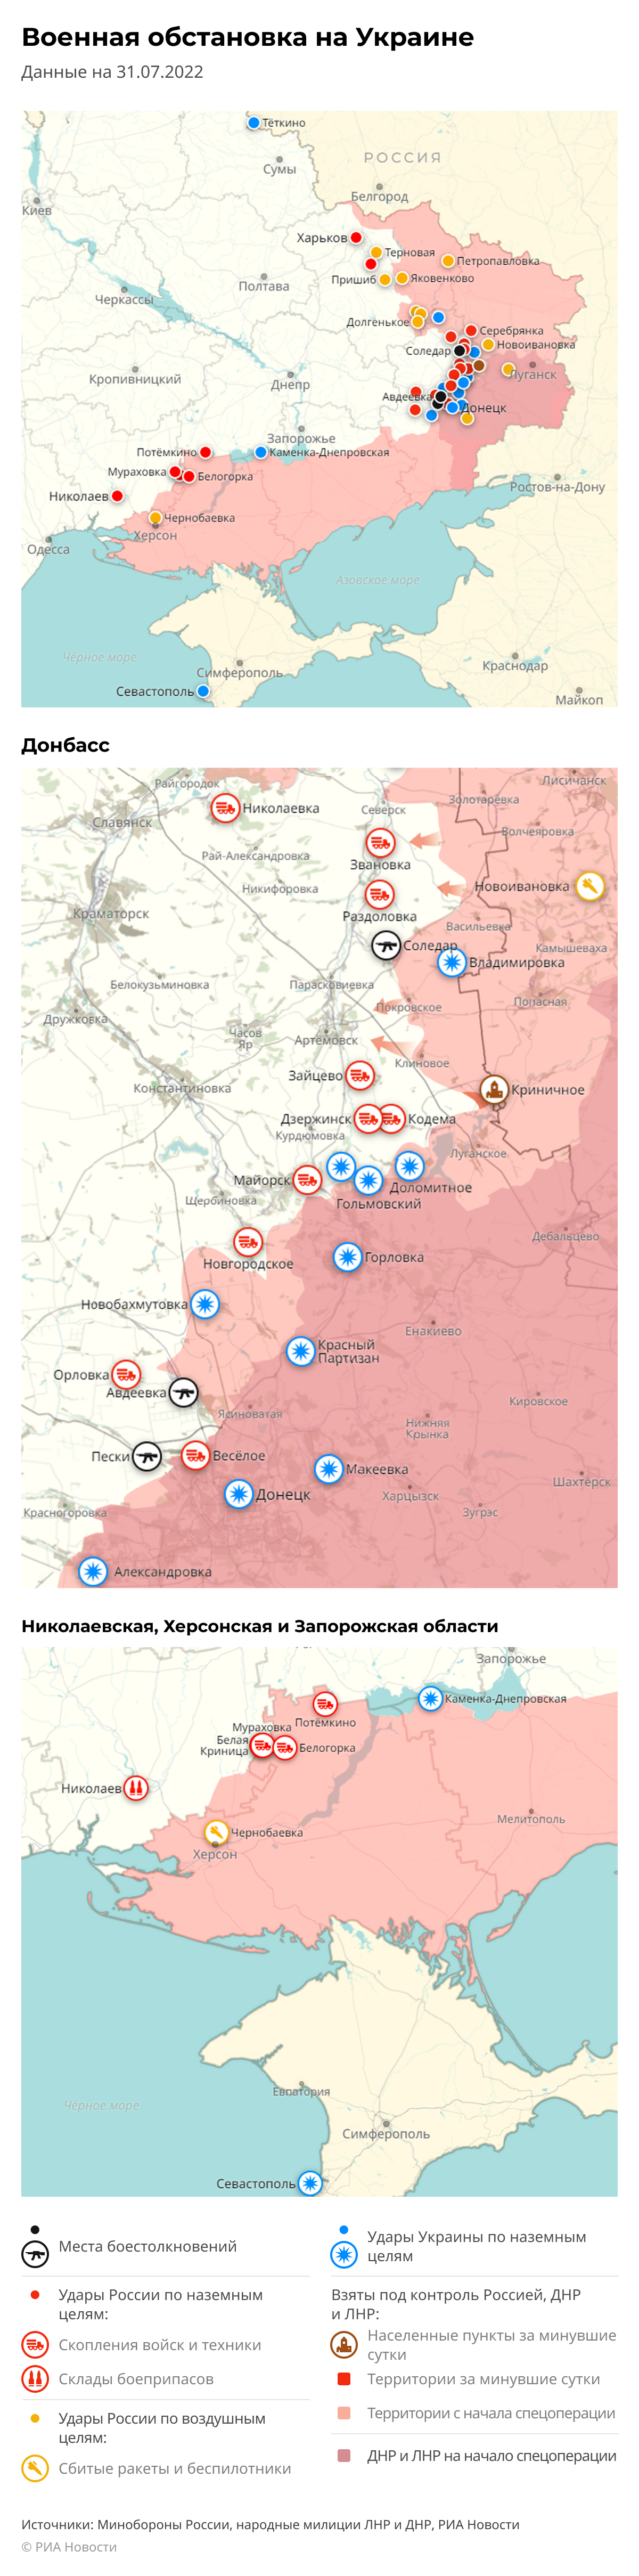 Карта спецоперации Вооруженных сил России на Украине на 31.07.2022